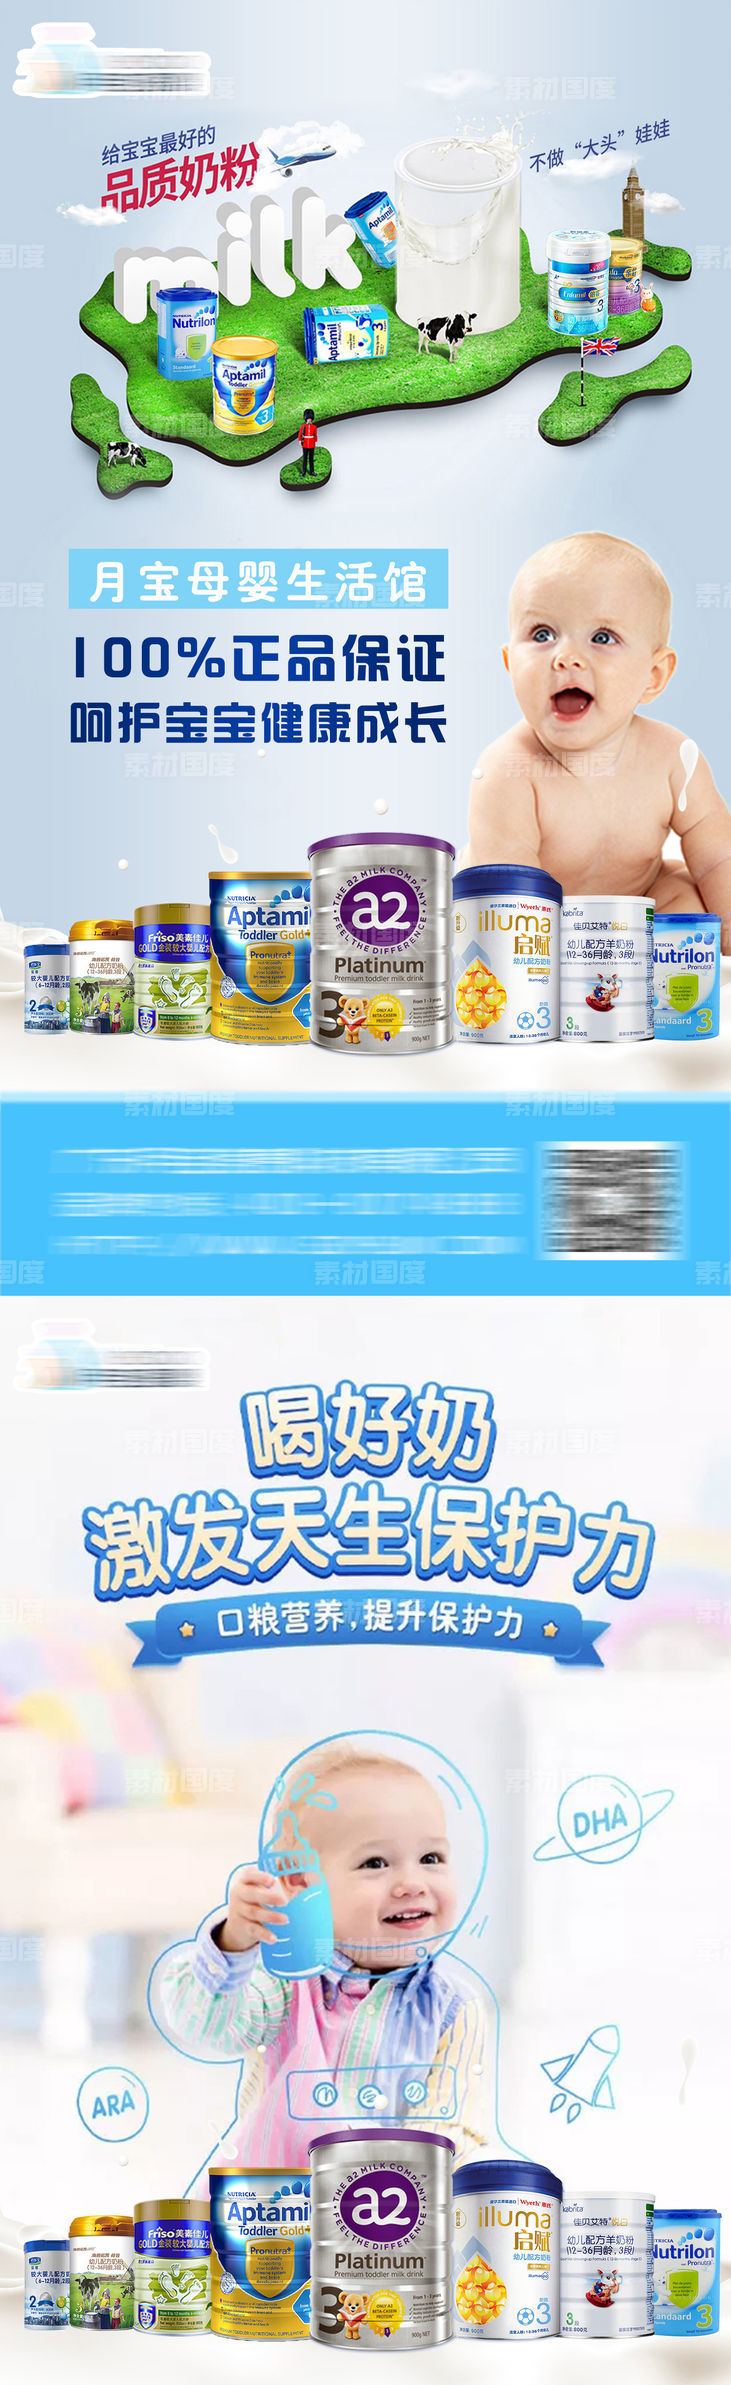 母婴产品系列海报